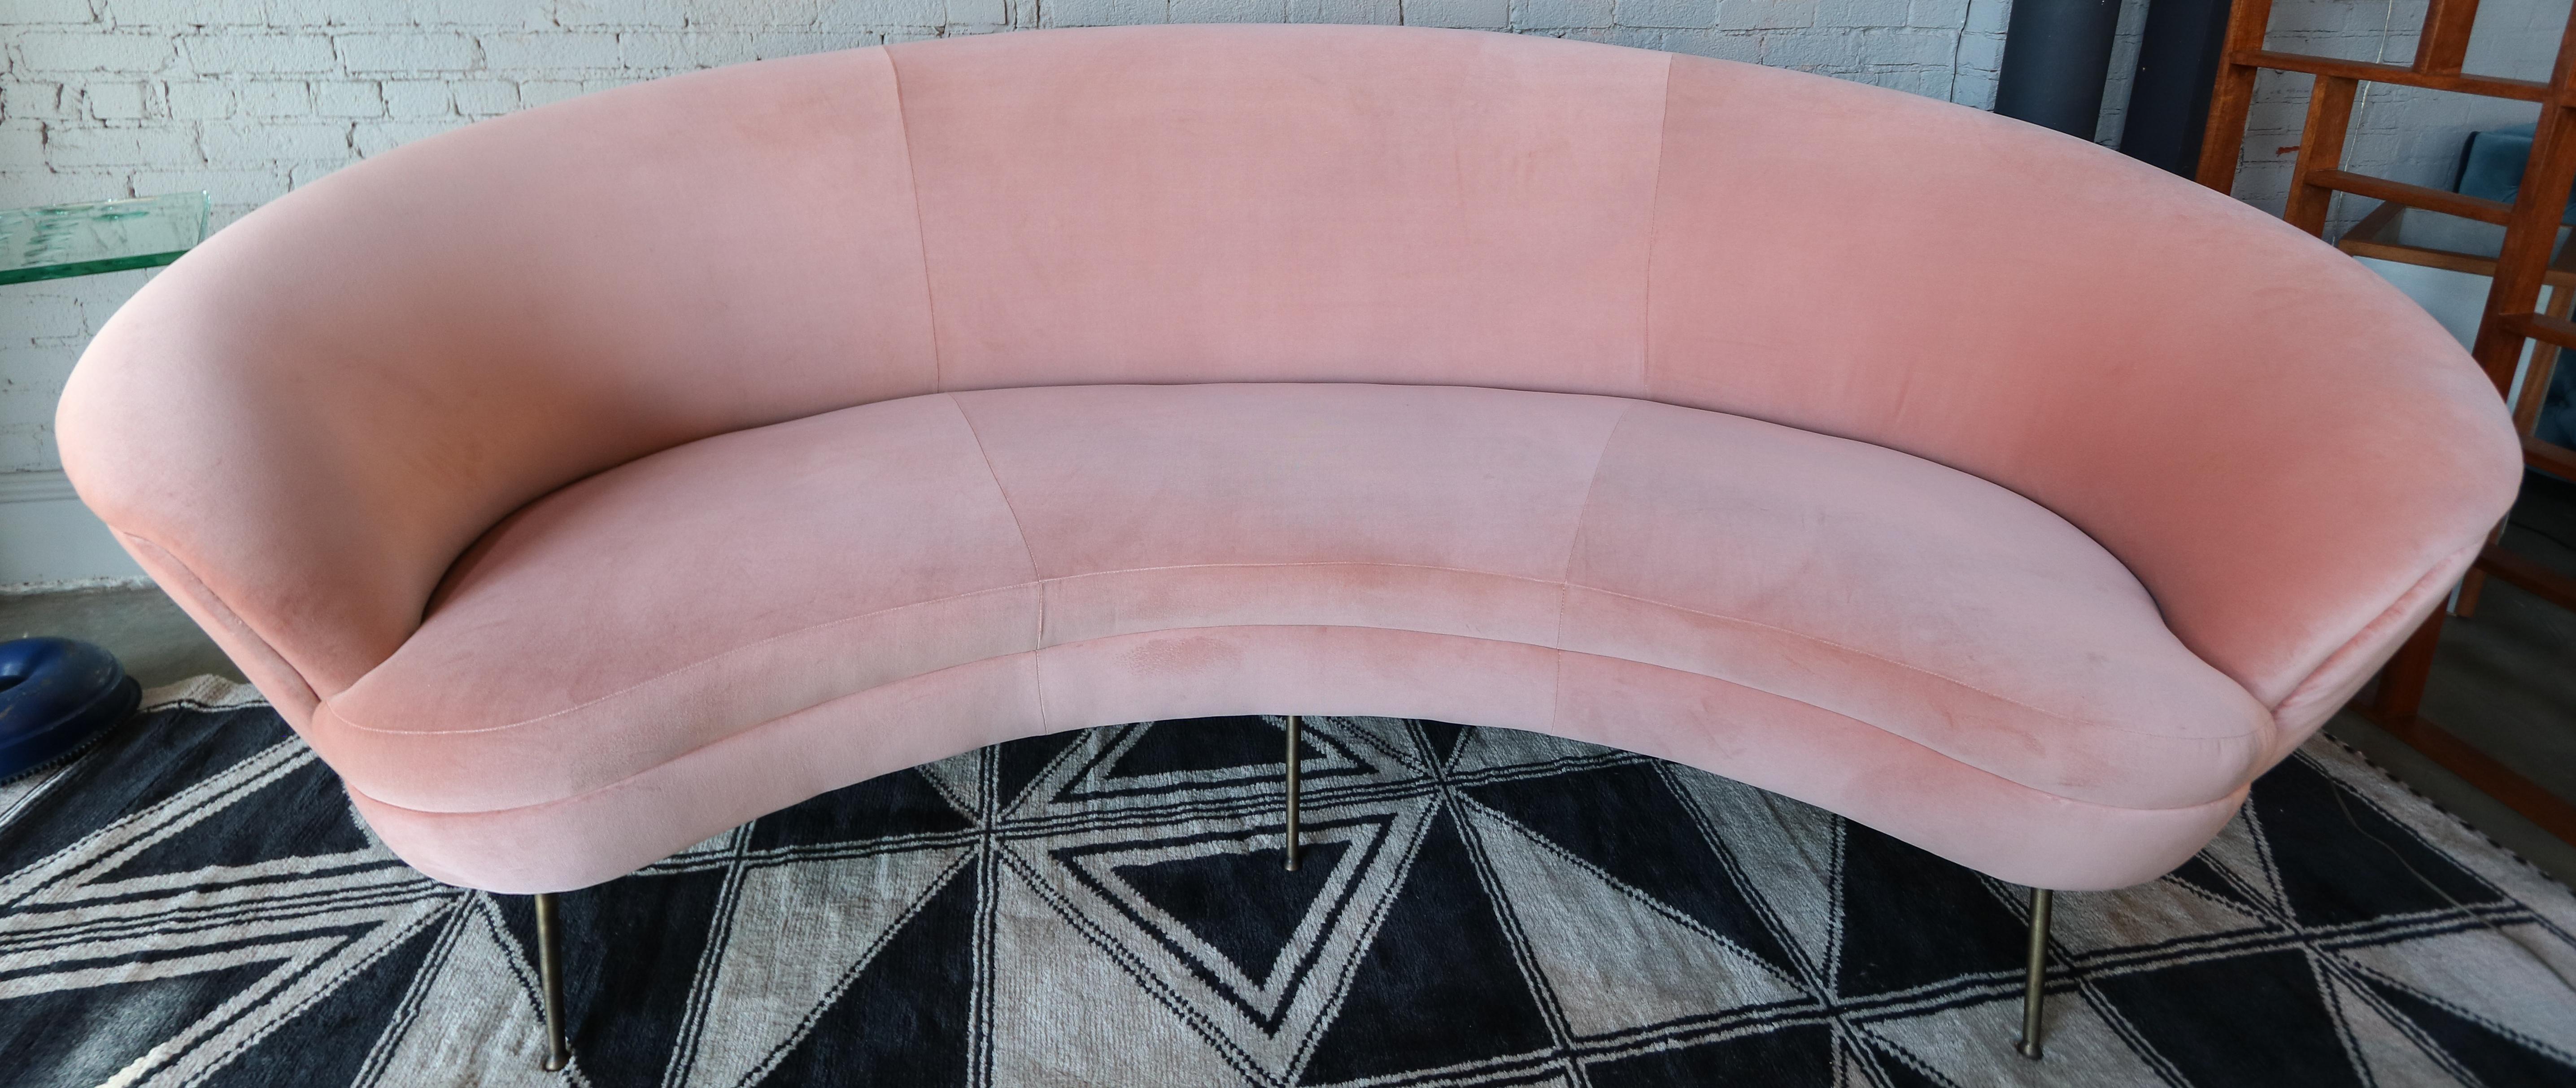 Canapé incurvé de style midcentury, tapissé de velours rose et doté de pieds en laiton.  Fabriqué à Los Angeles par Adesso Imports.

Peut être réalisé en différentes tailles et couleurs.